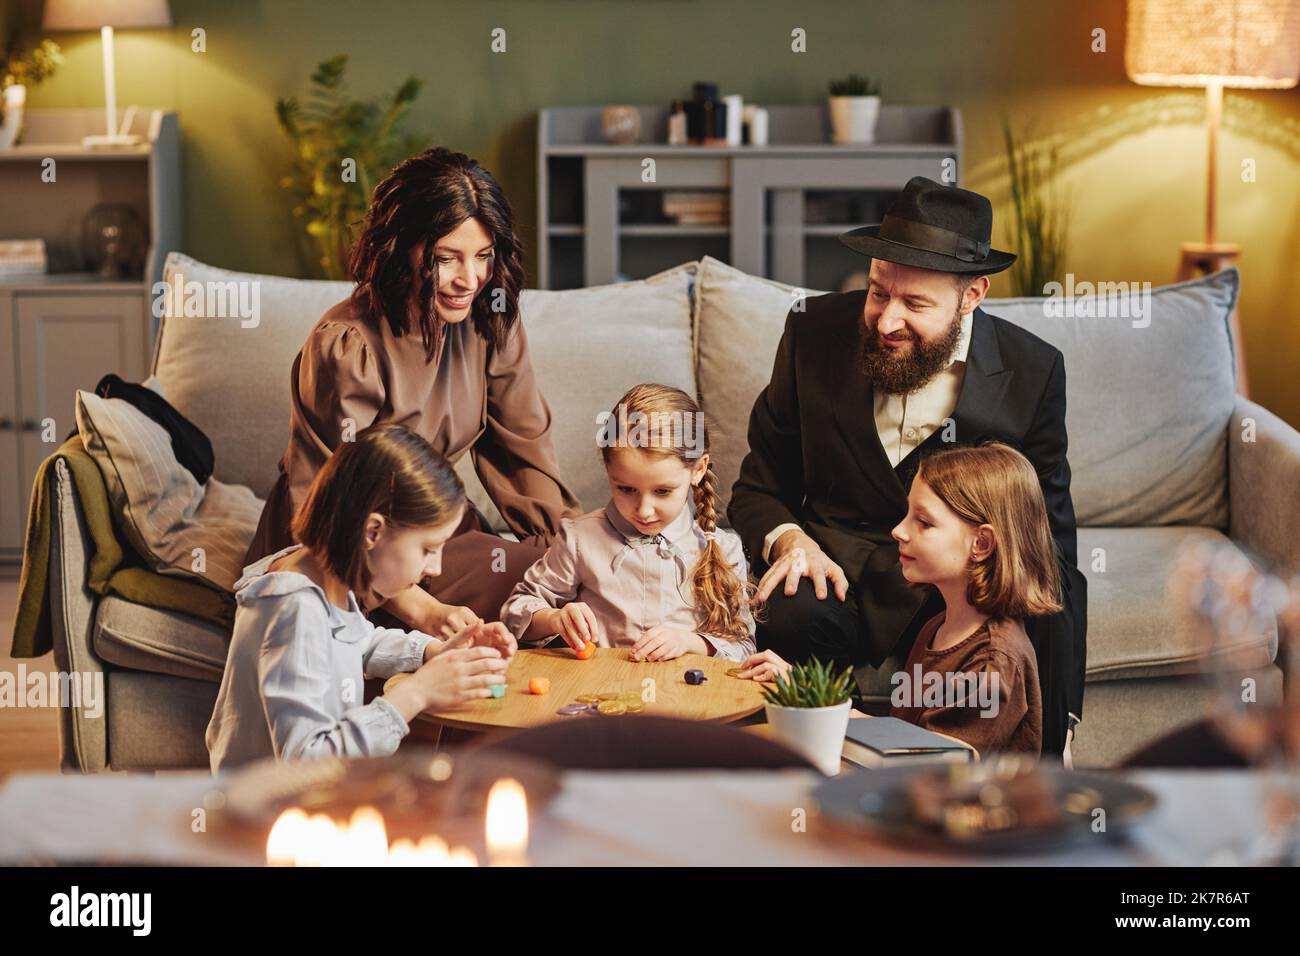 Ritratto della famiglia ebraica moderna che gioca tradizionale gioco dreidel in un ambiente accogliente casa Foto Stock